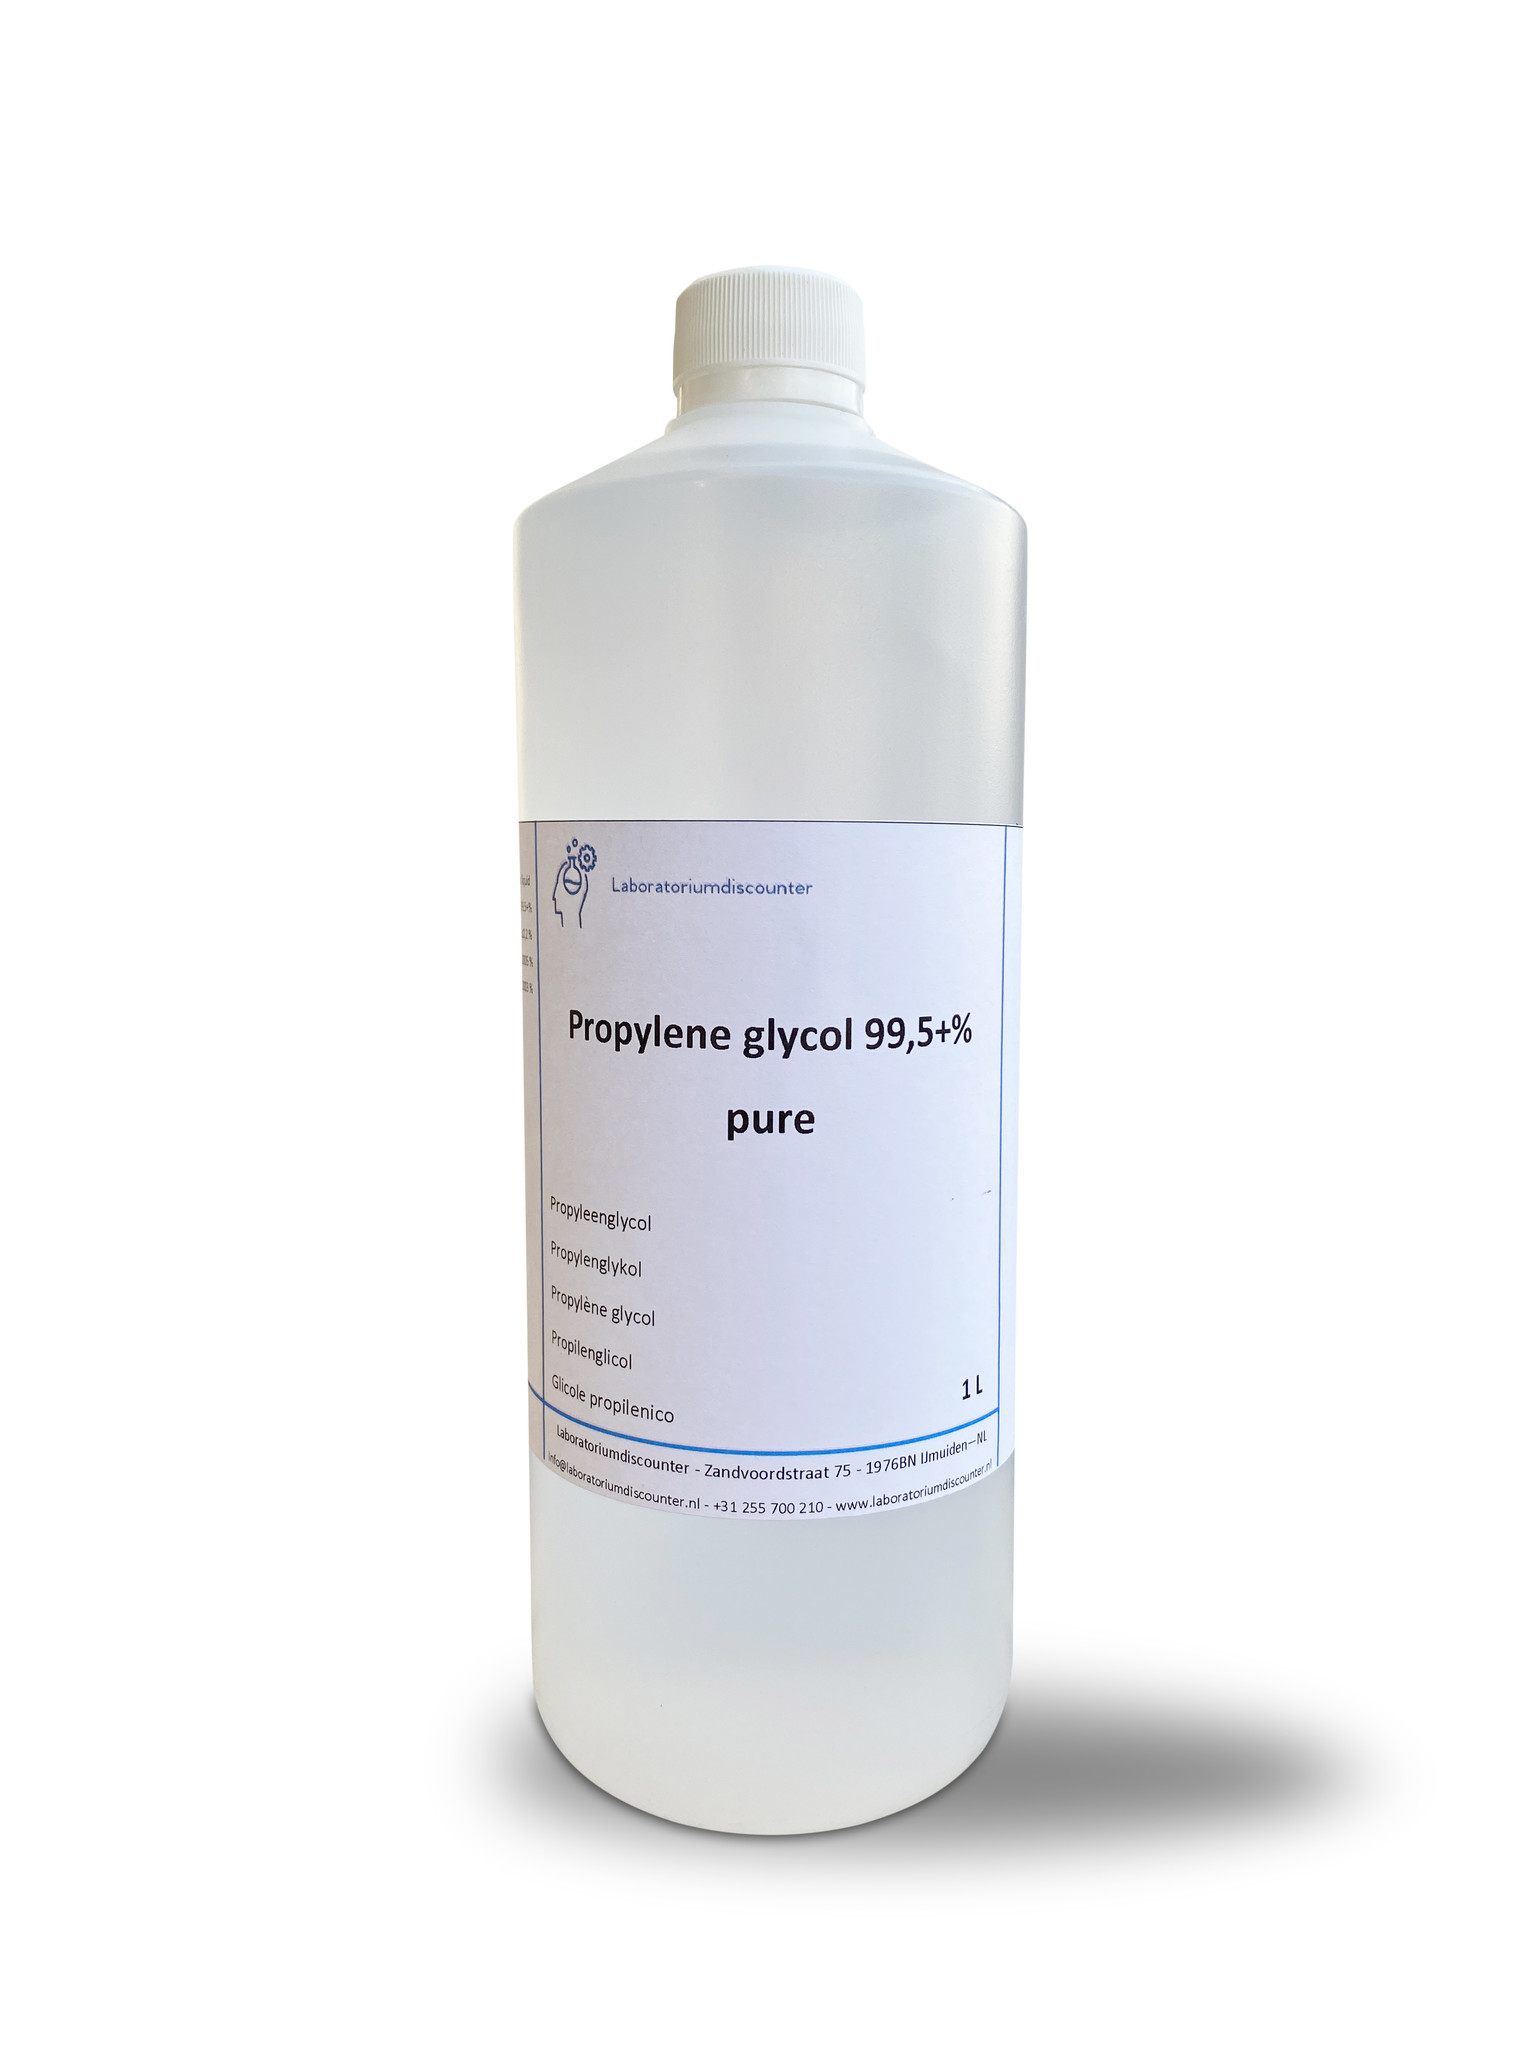 Acquista glicole propilenico CAS 57-55-6? - Glicole propilenico puro CAS  57-55-6 disponibile in diverse confezioni, a un prezzo conveniente!